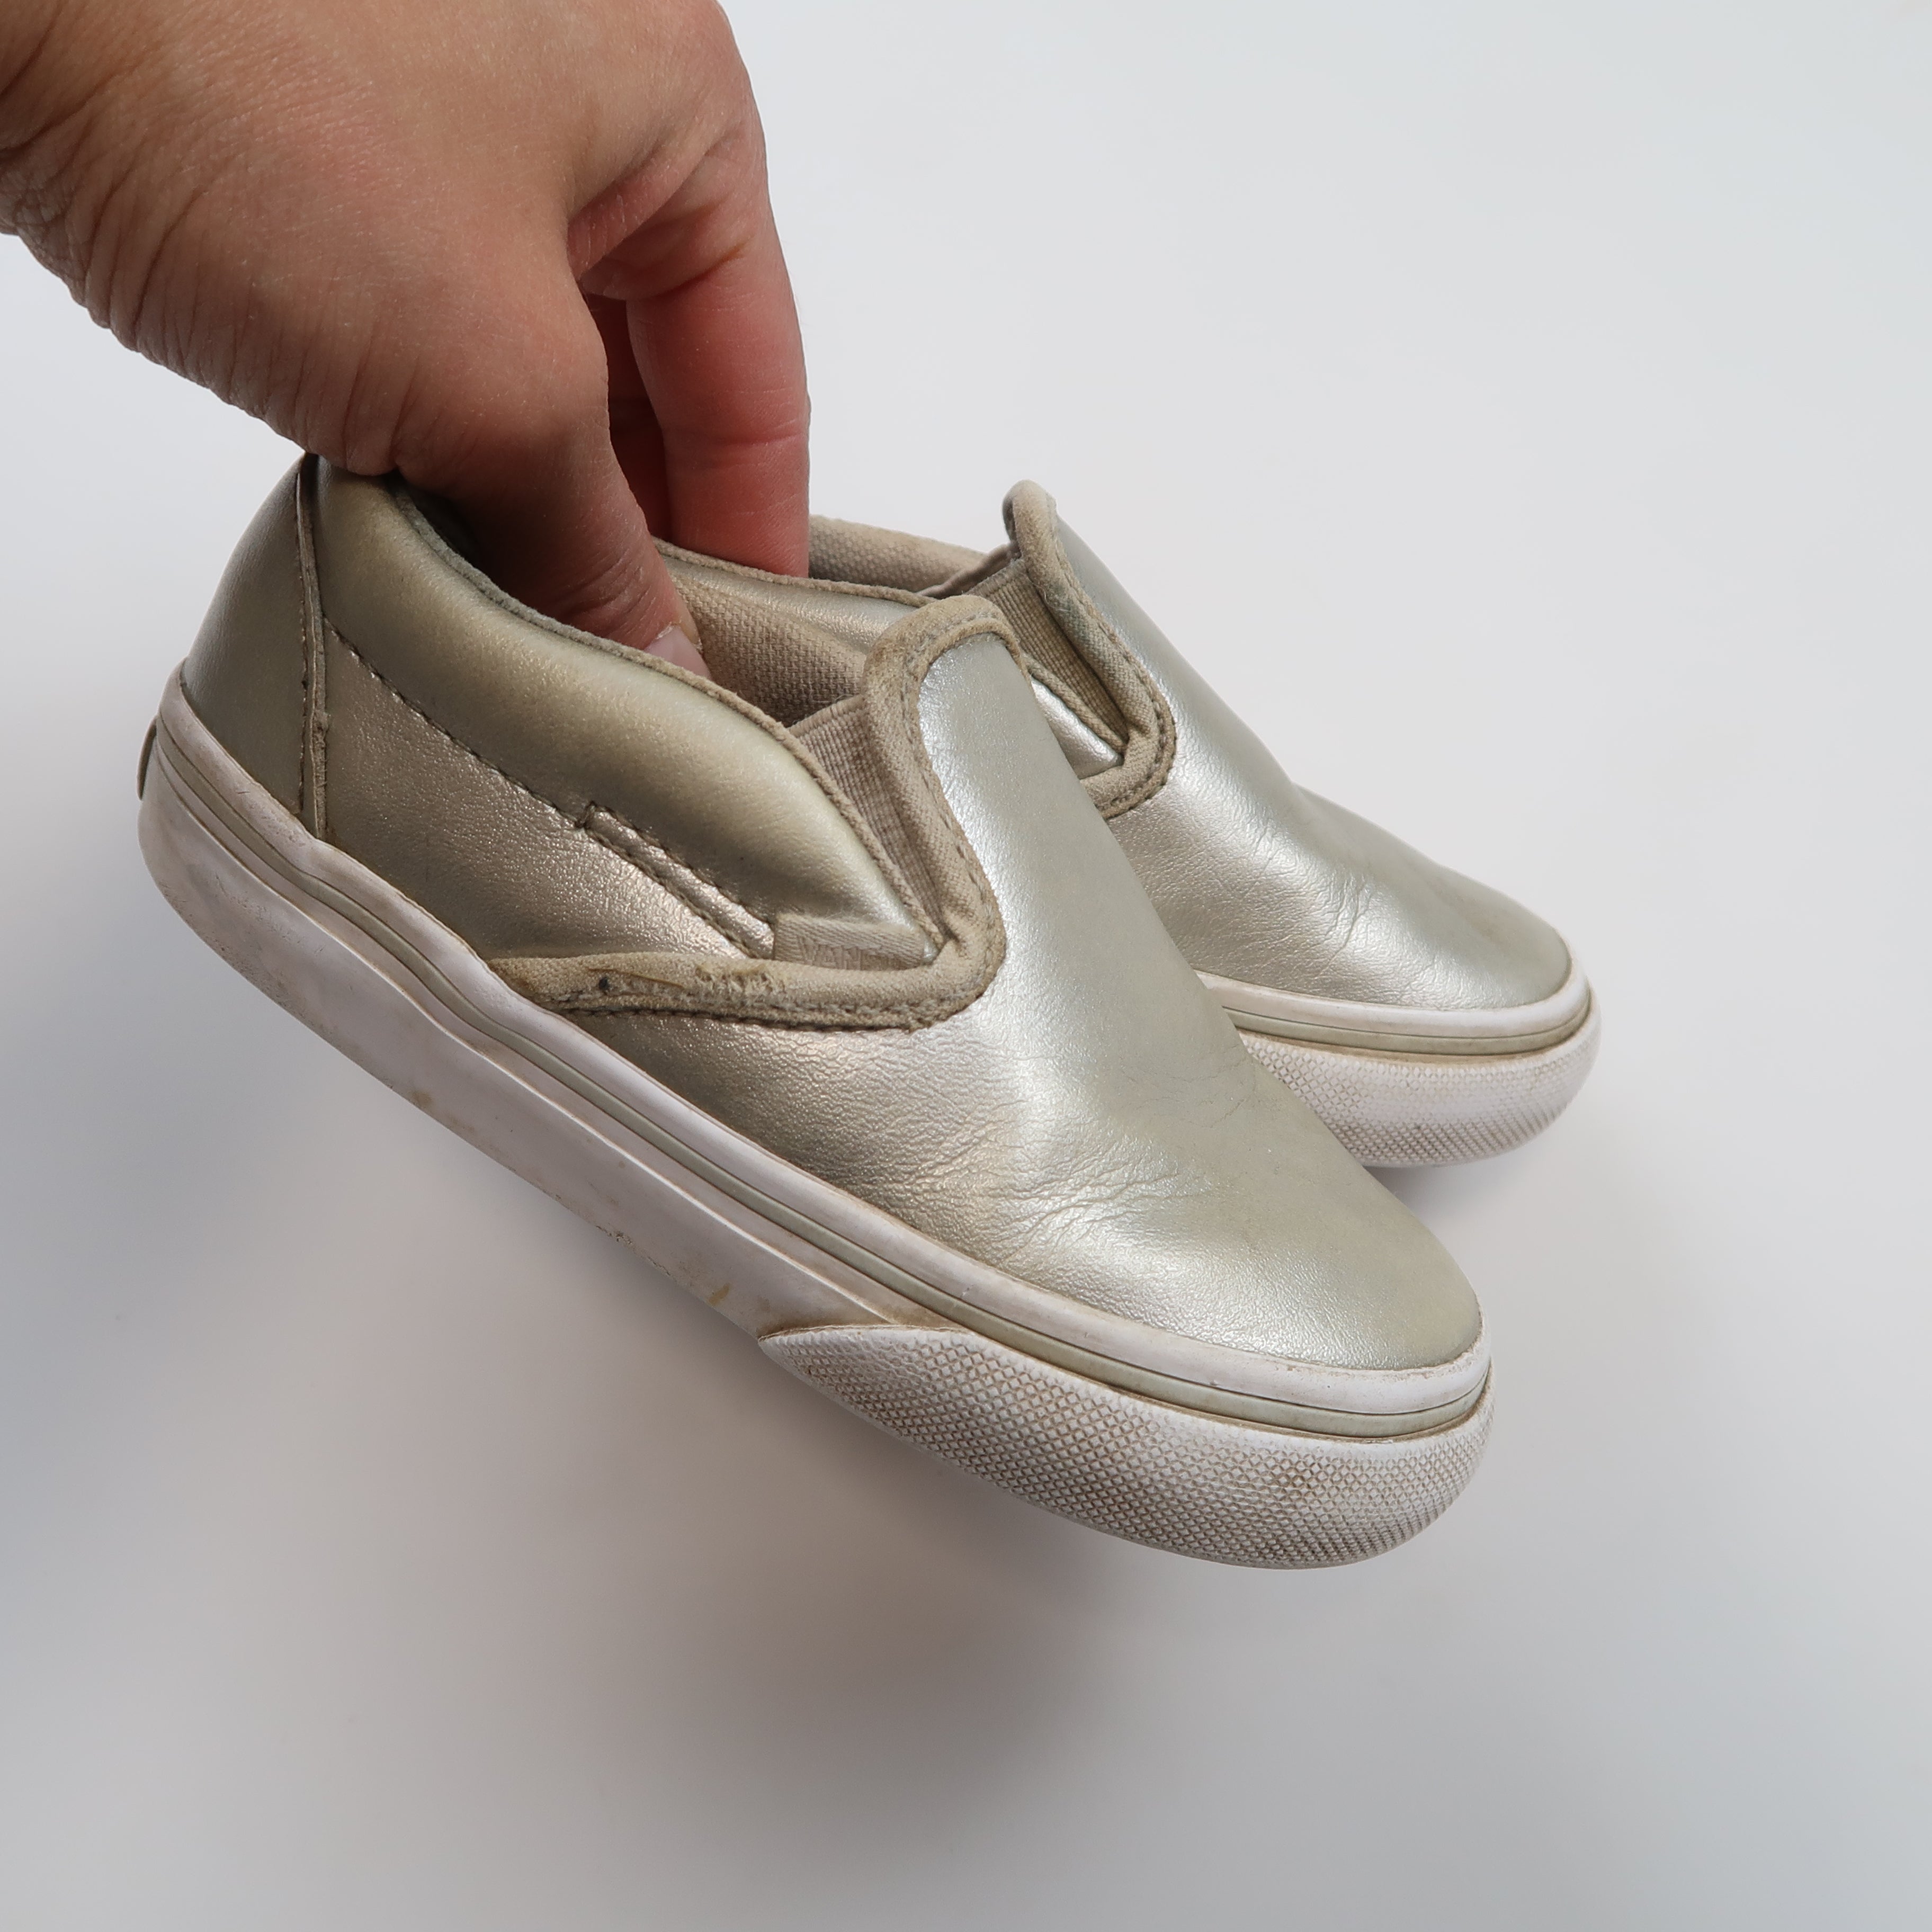 Vans - Shoes (Shoes - 8) *Playwear